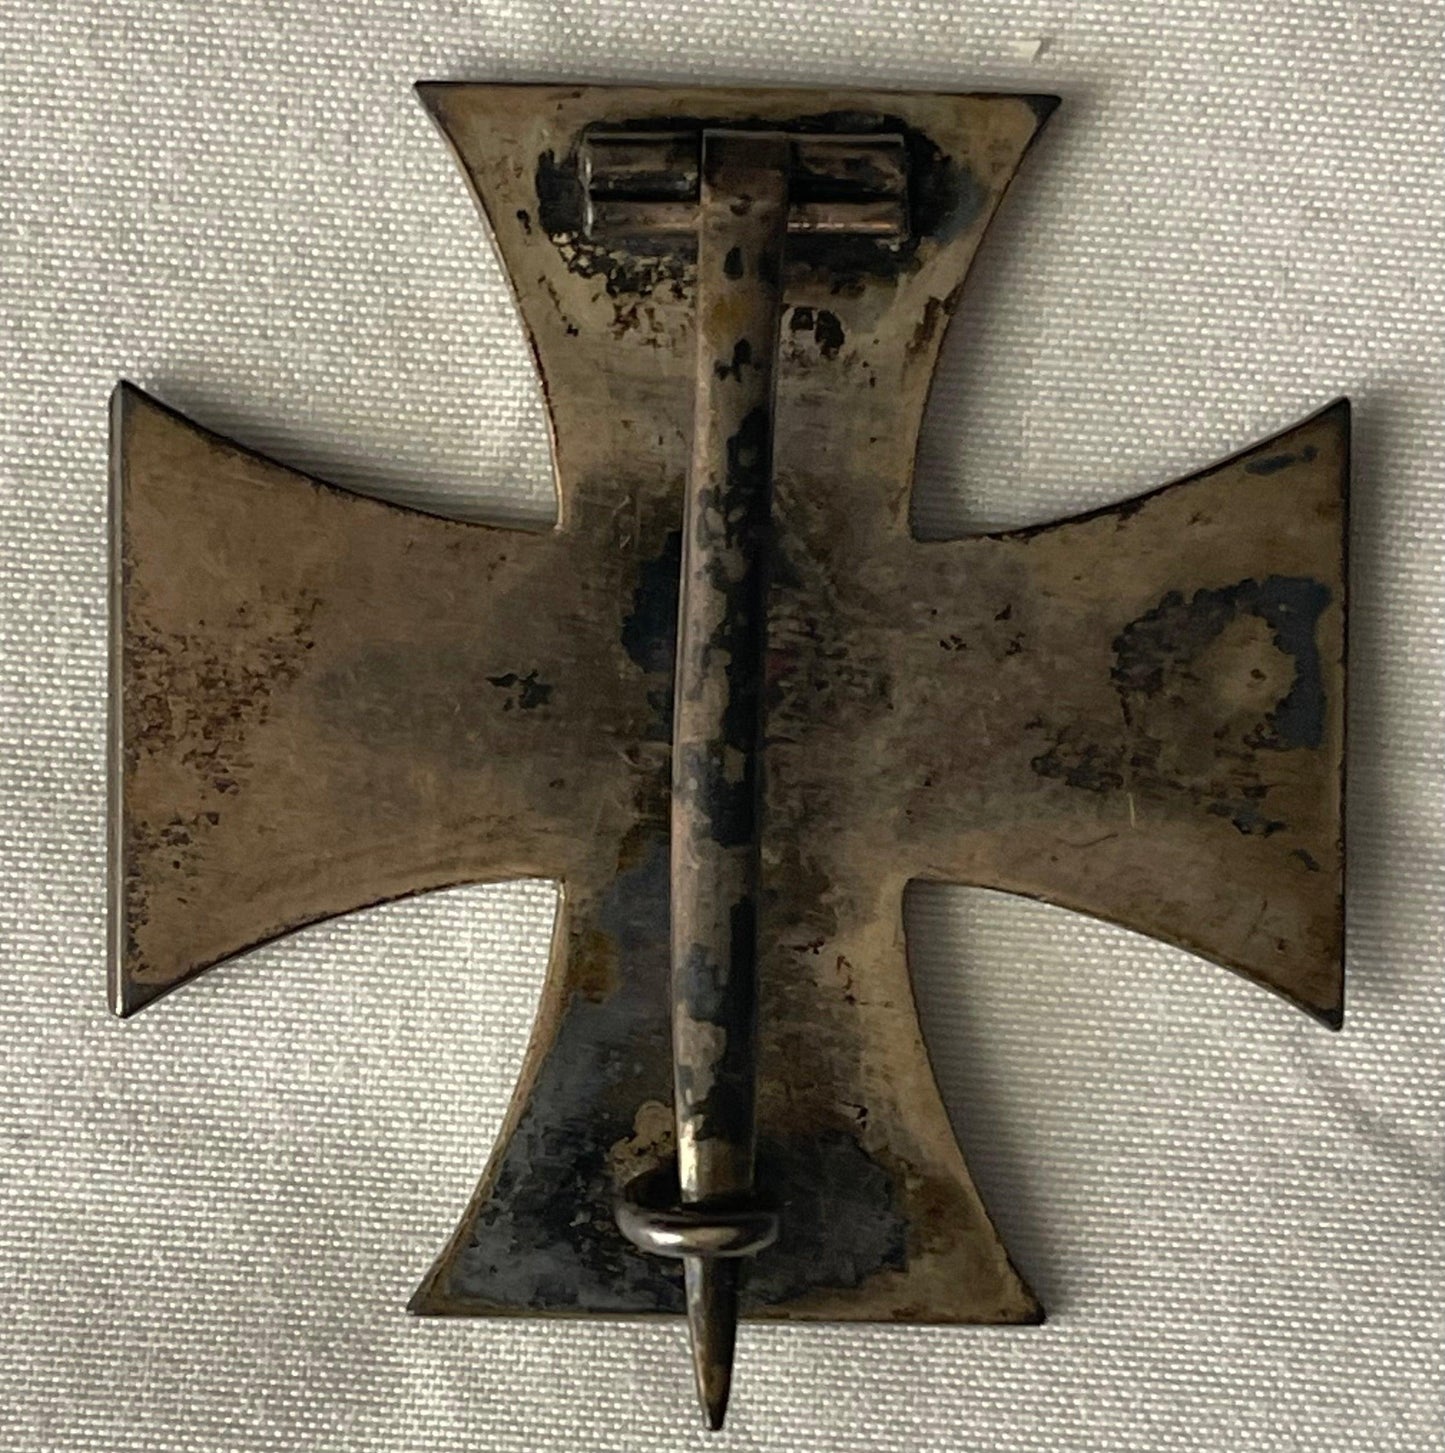 Germany Award and Document 1914 Iron Cross 1st Class Hauptmann d. L. II Karl Pletscher - Derrittmeister Militaria